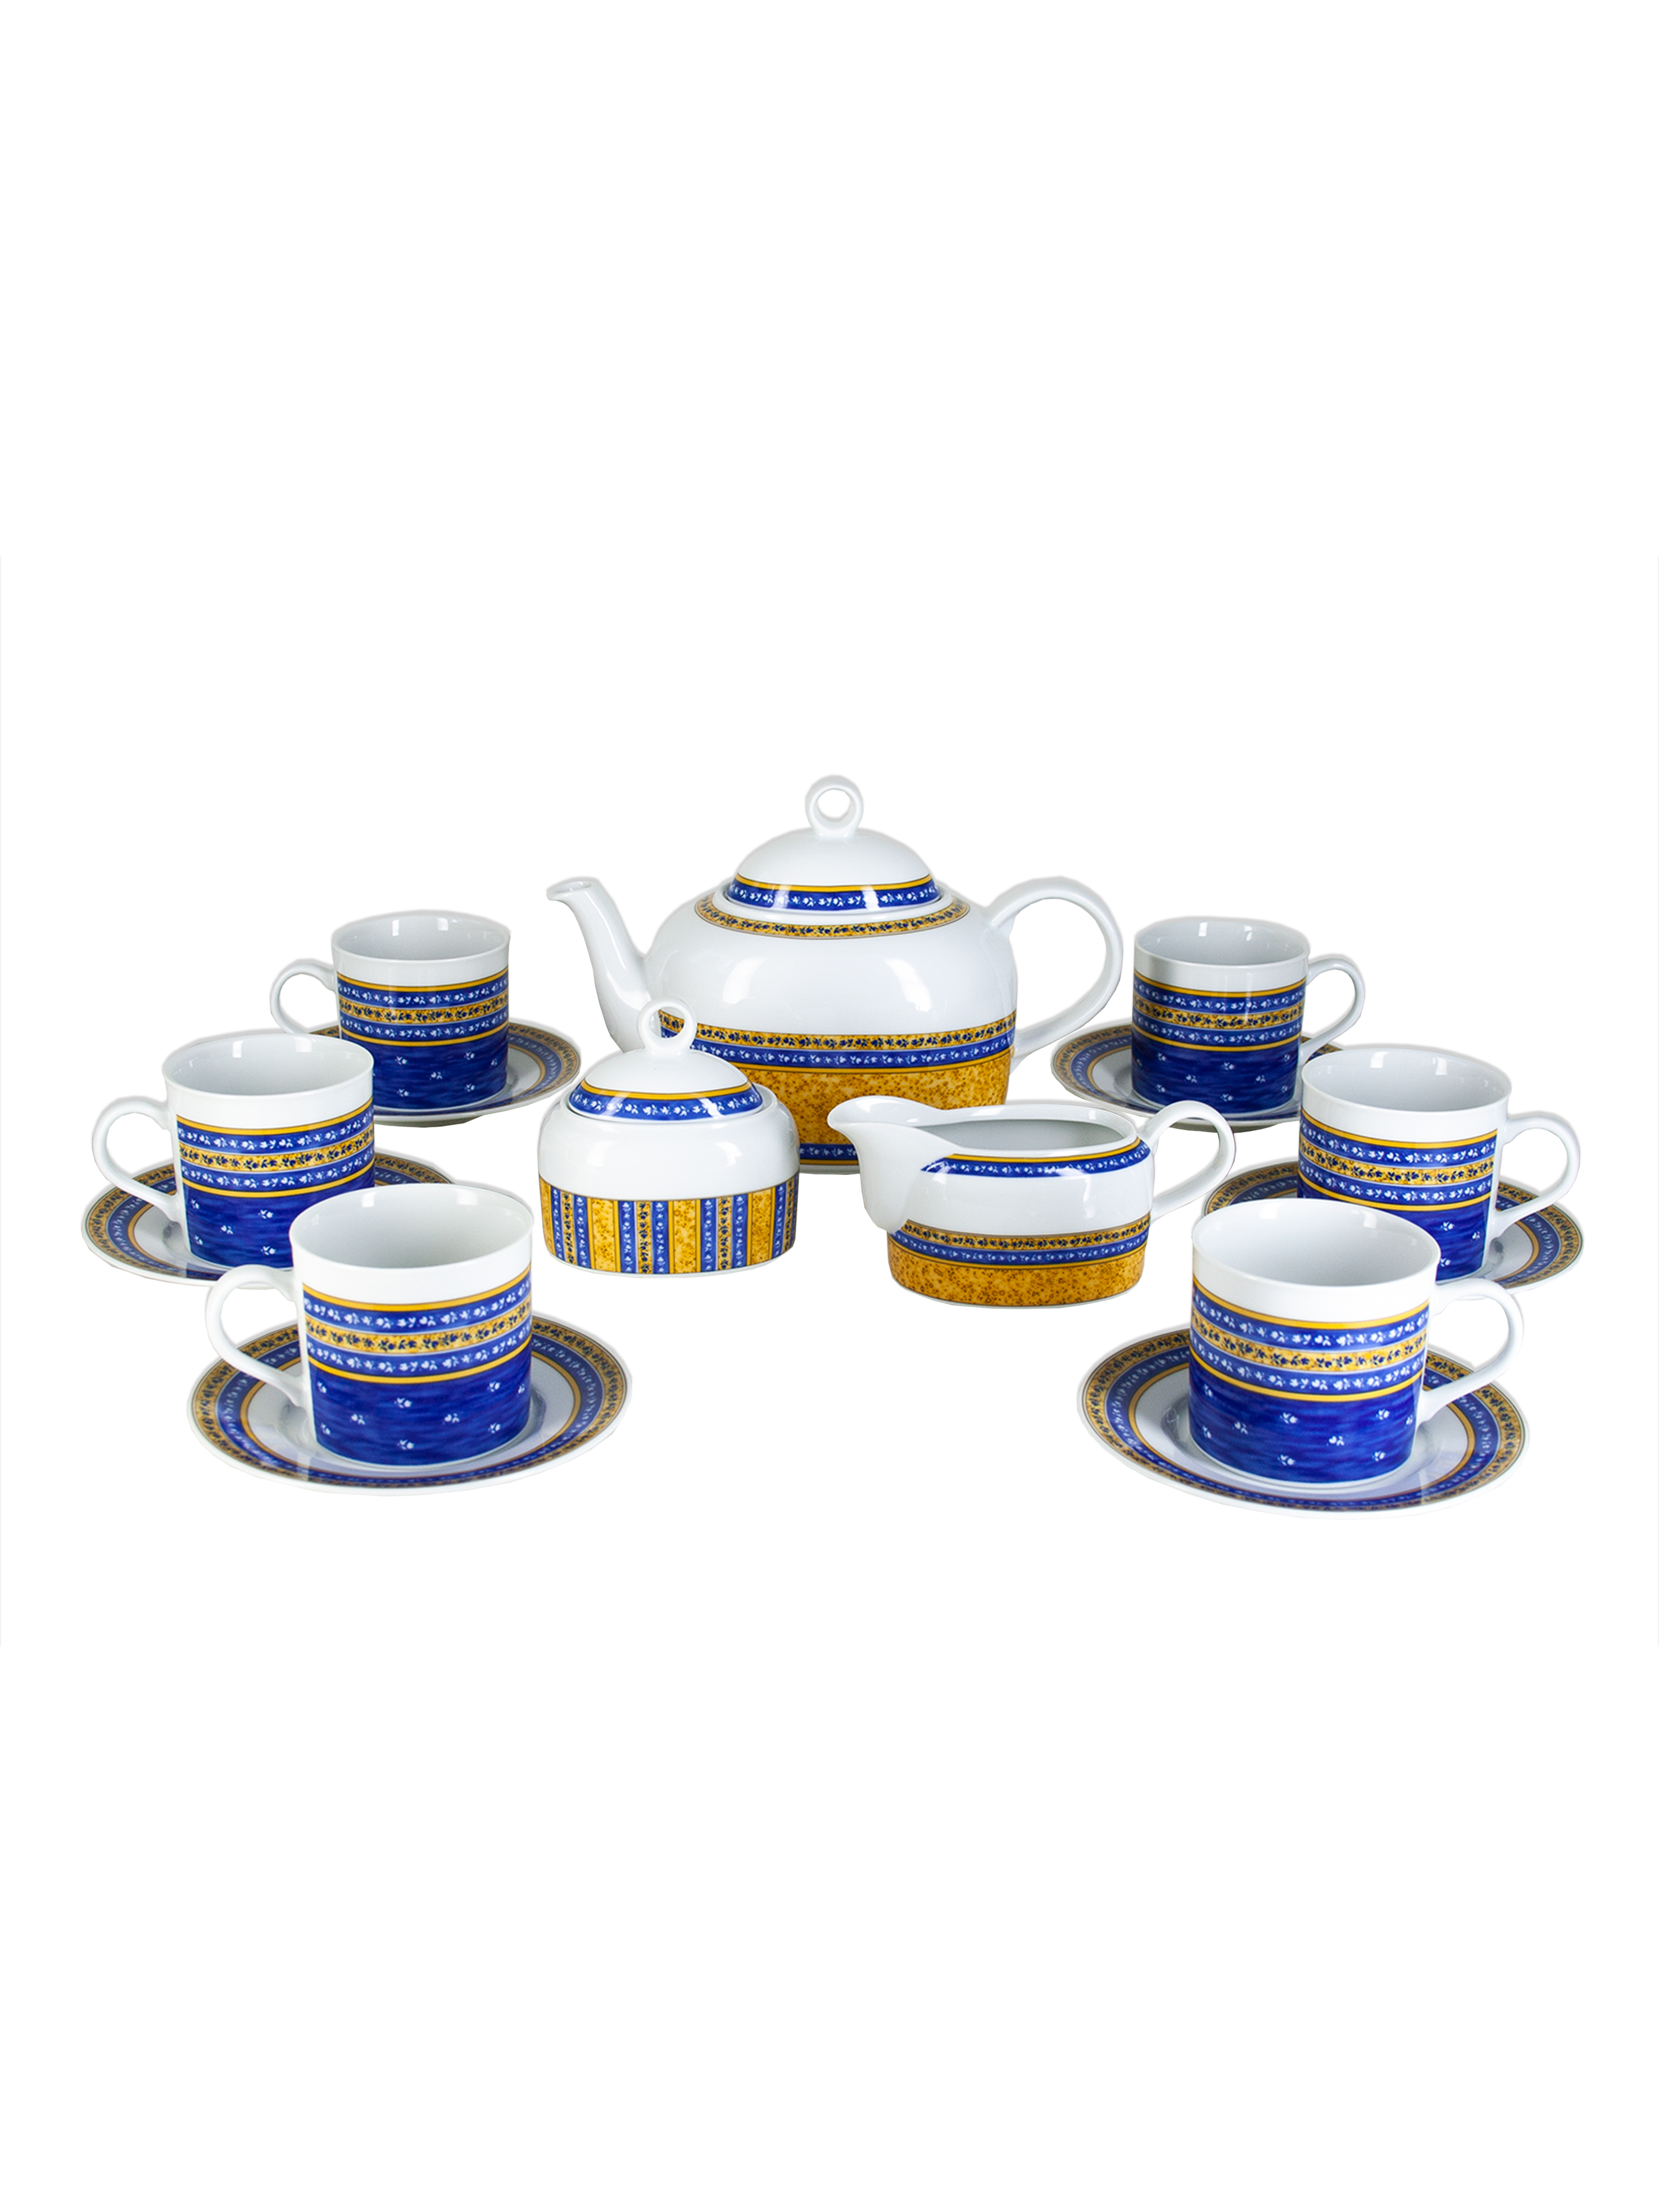 Чайный сервиз Cairo на 6 персон 17 предметов декор Сине-желтые полоски. Фарфор Тхун, Чехия.